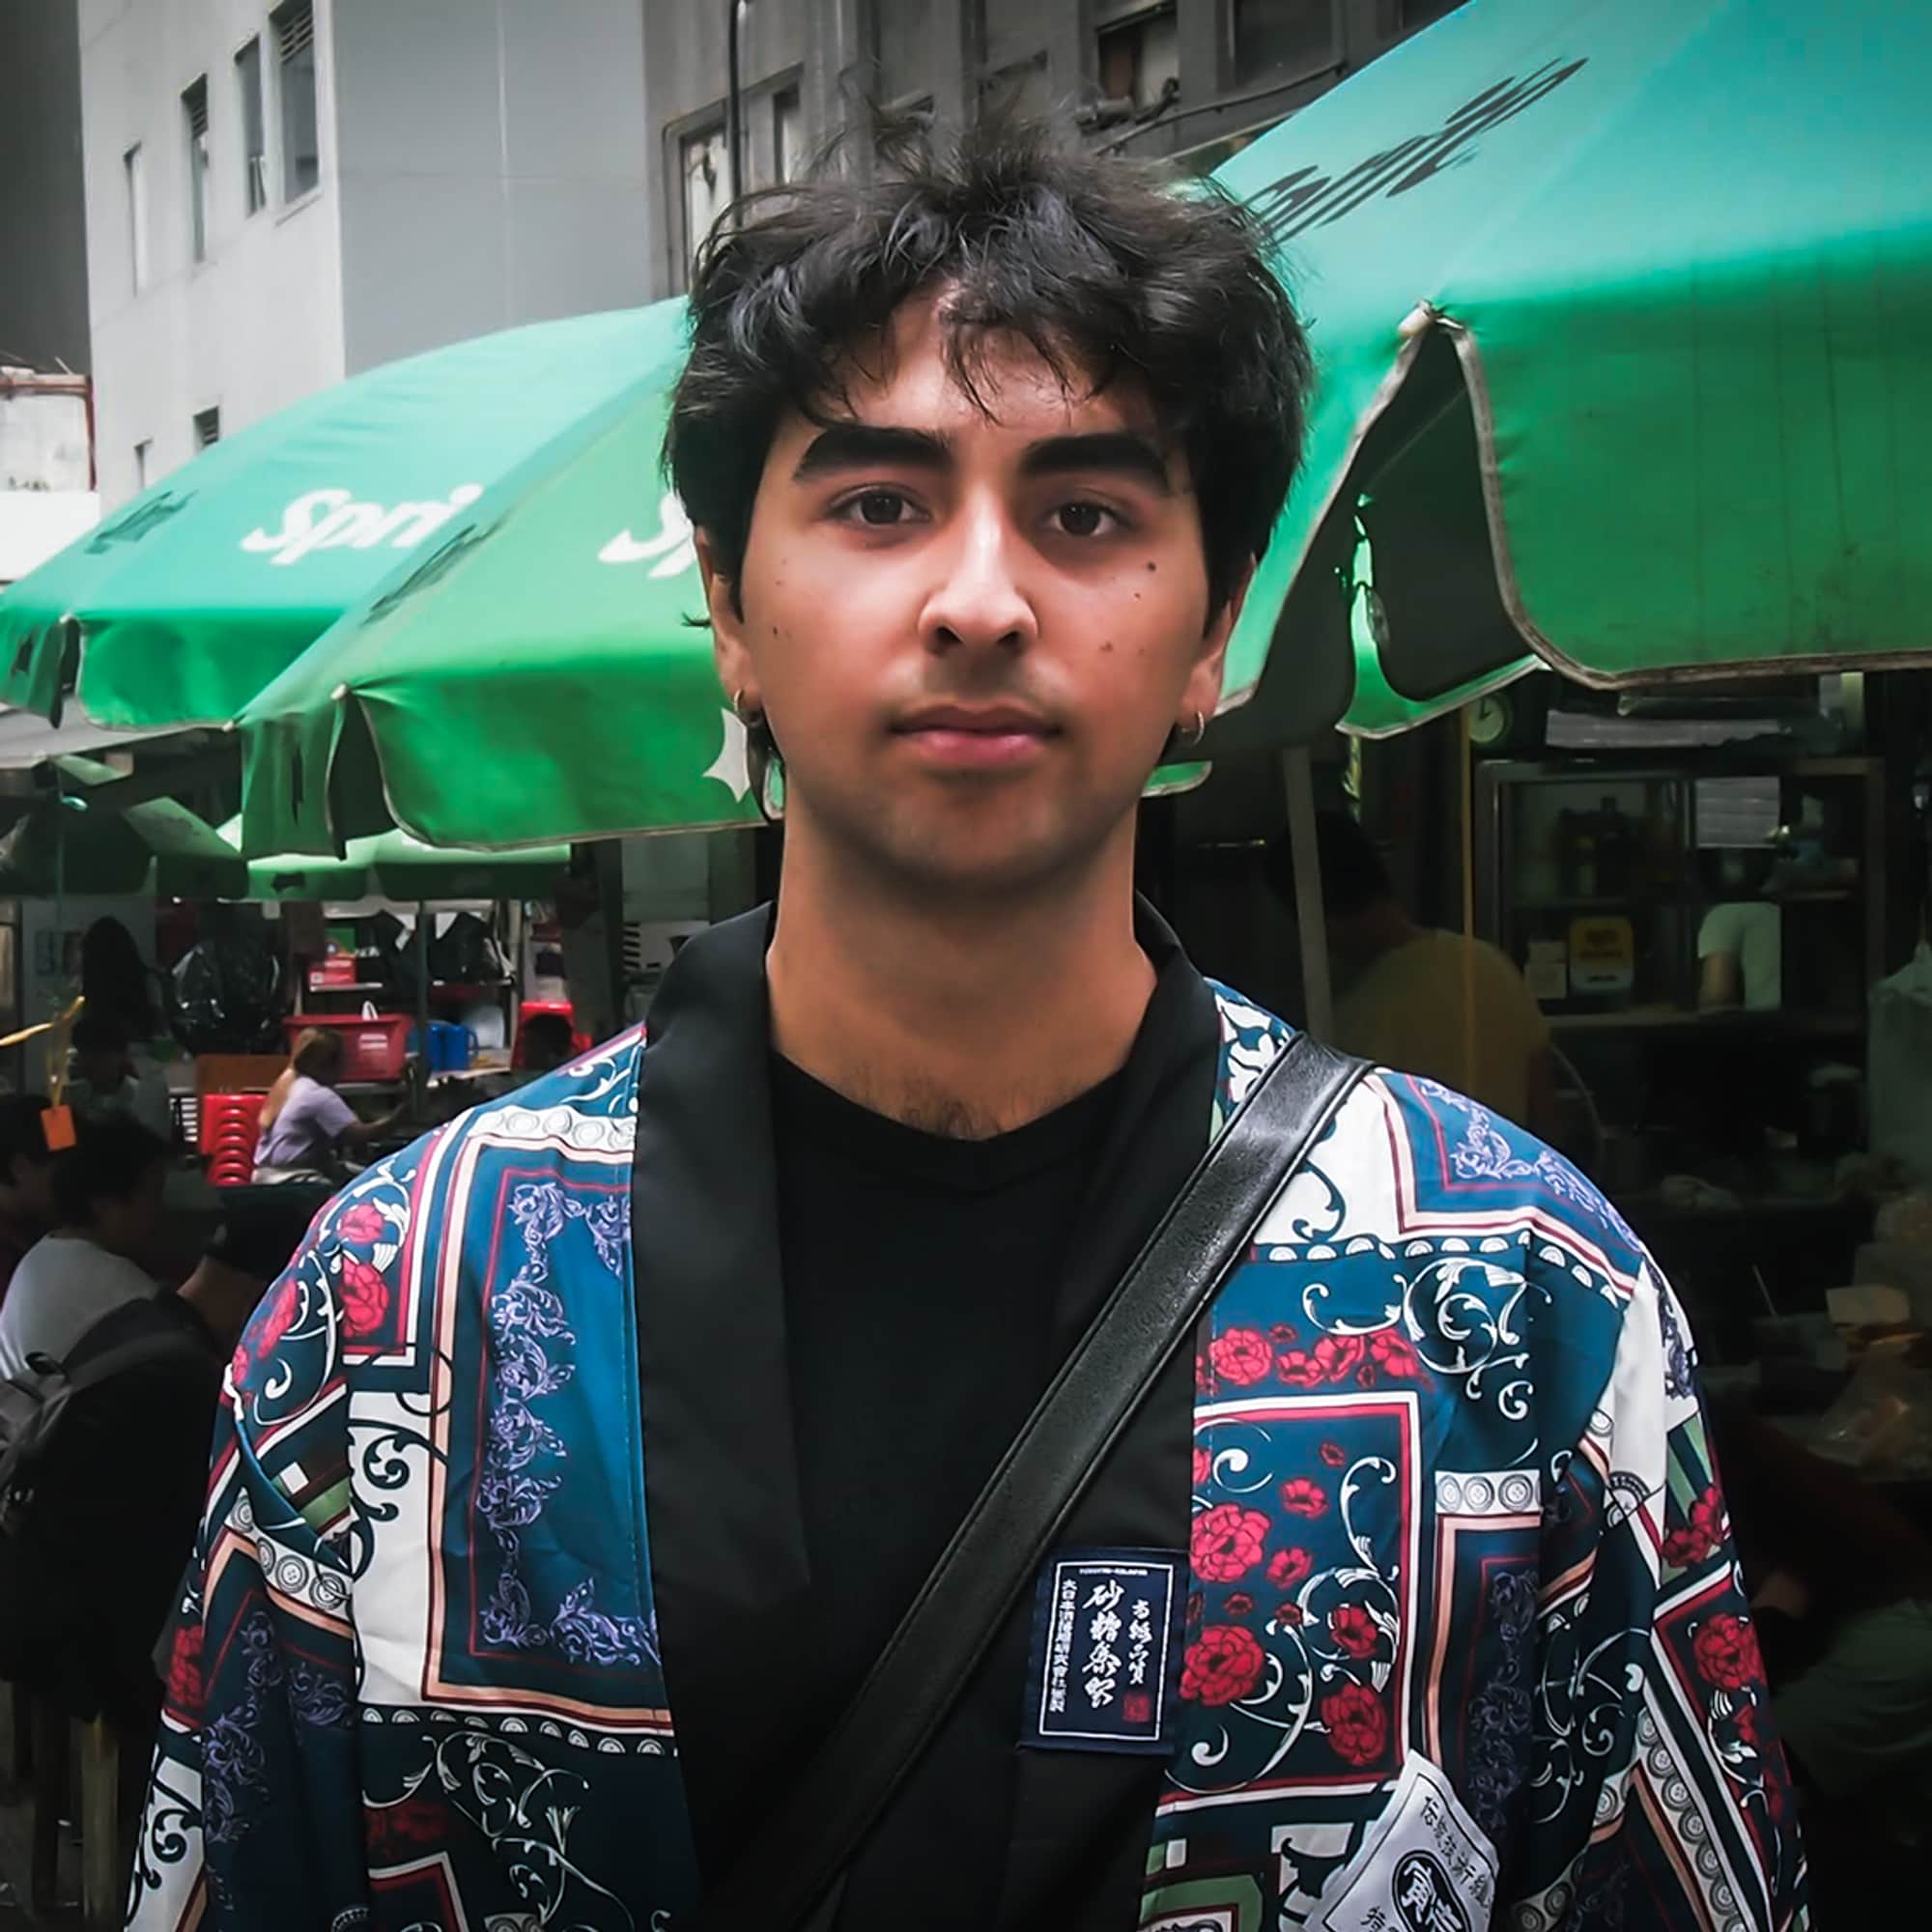 Fredrik (22) har mørkt hår og markerte øyebryn. Han står blant en folkemengde i Hong Kong. Han har et seriøst blikk.